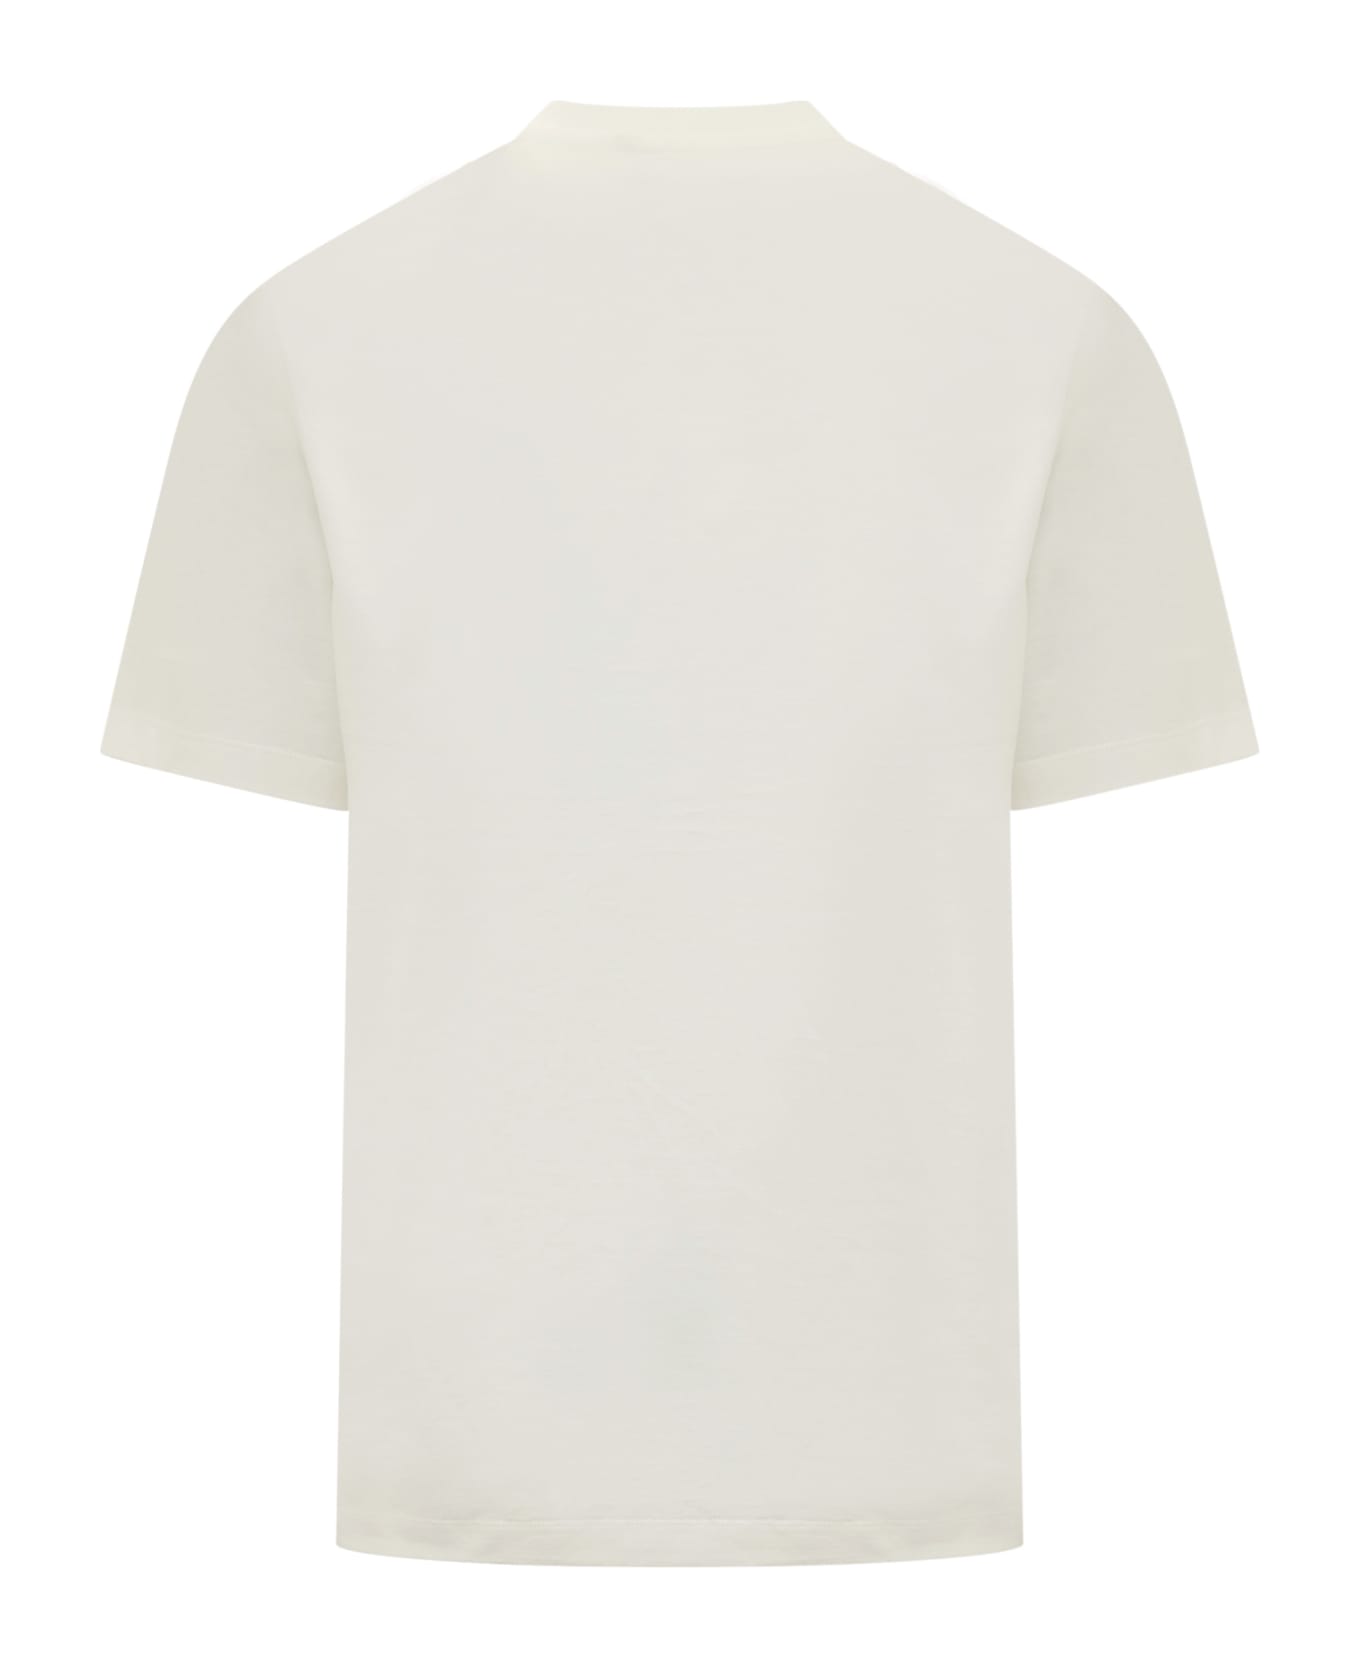 Y-3 Gfx T-shirt - OWHITE